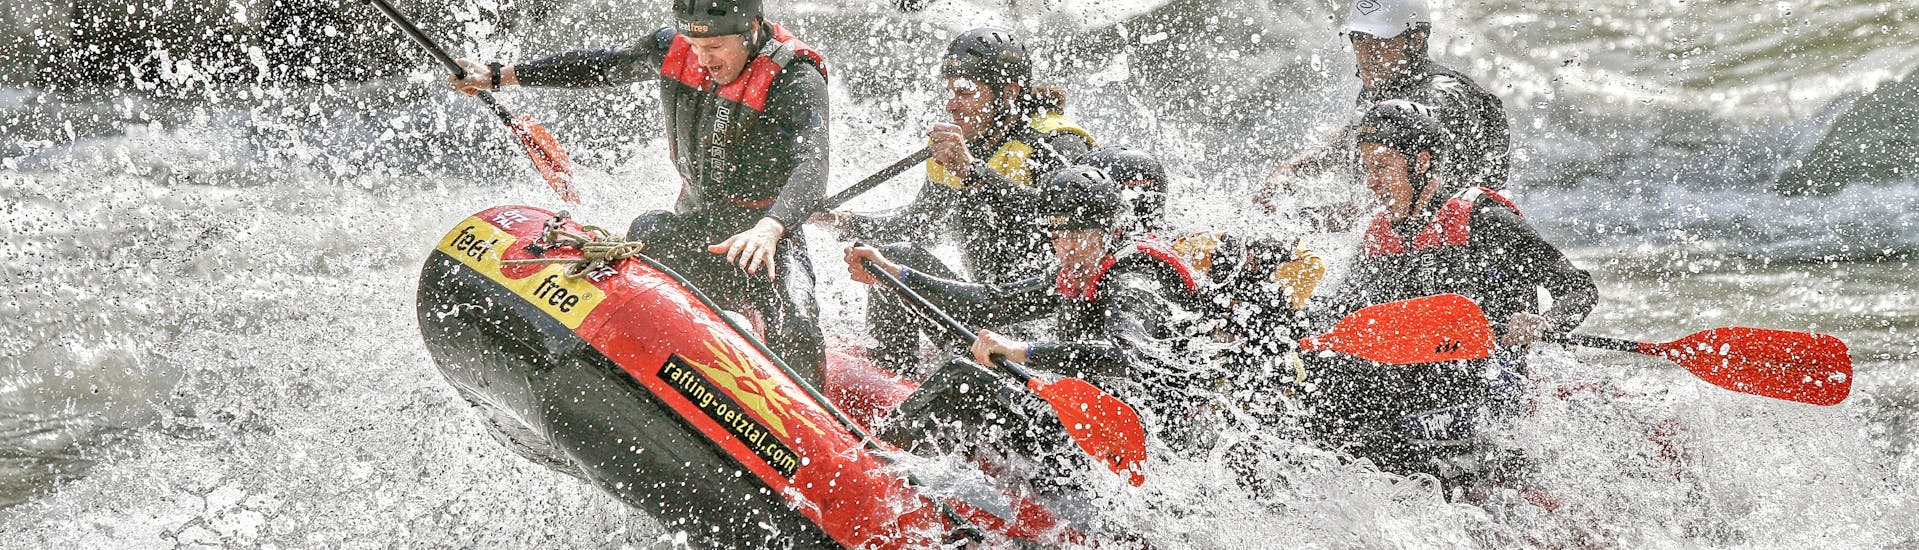 Menschen werden nass während des Rafting in der Imster Schlucht - Blue Water Power-Raft Tour mit feelfree Outdoor Professionals Ötztal.